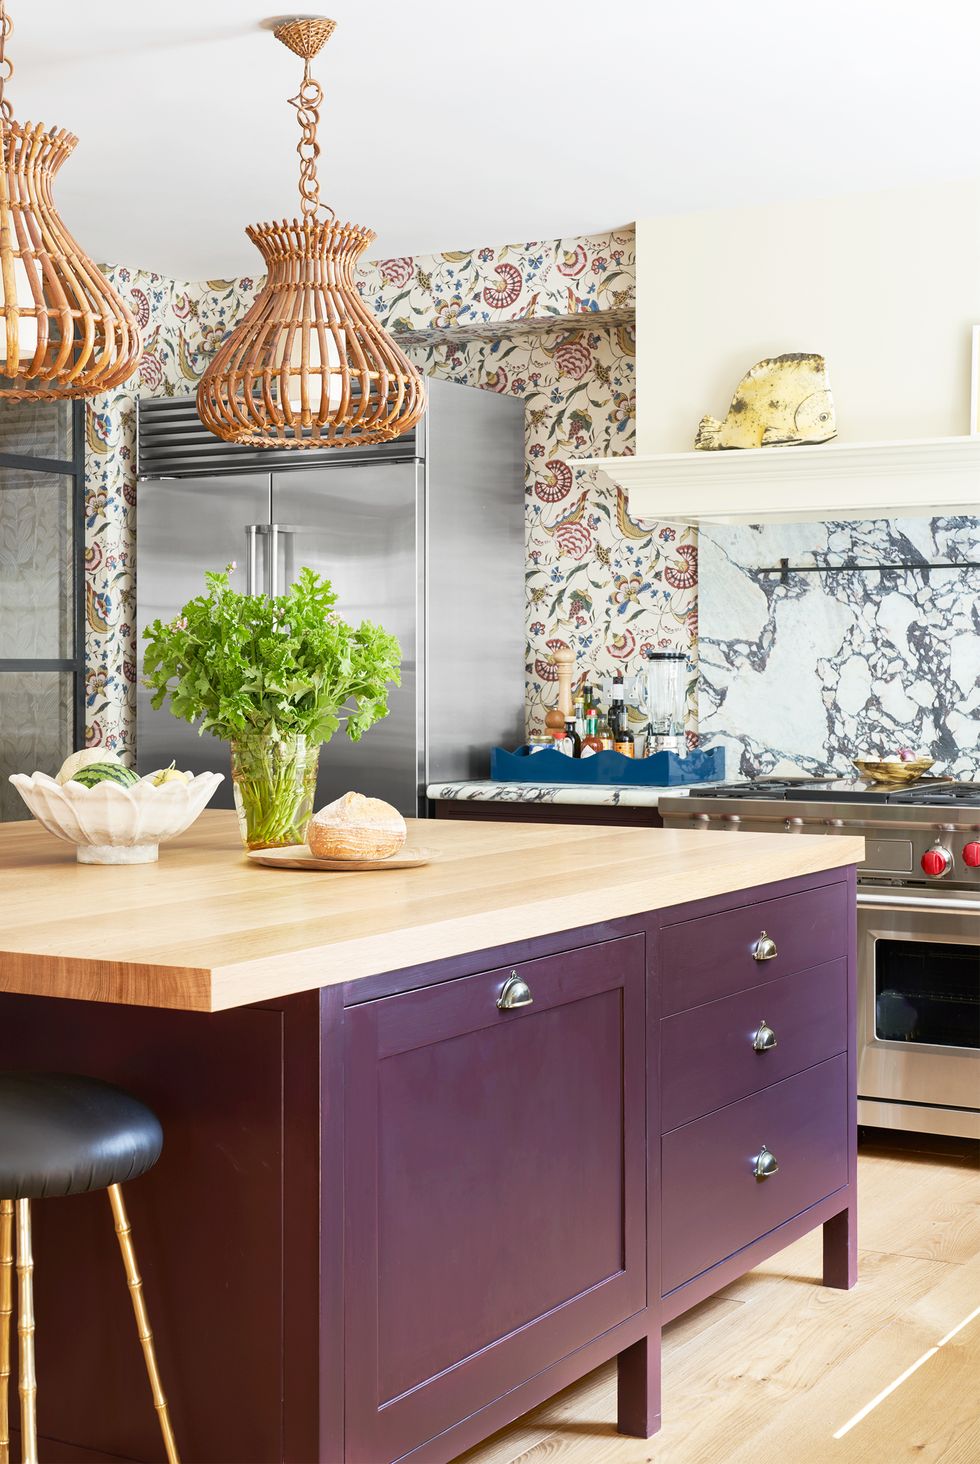 hình ảnh phòng bếp hiện đại với điểm nhấn là bàn đảo kiêm bar ăn sáng màu tím hoa cà